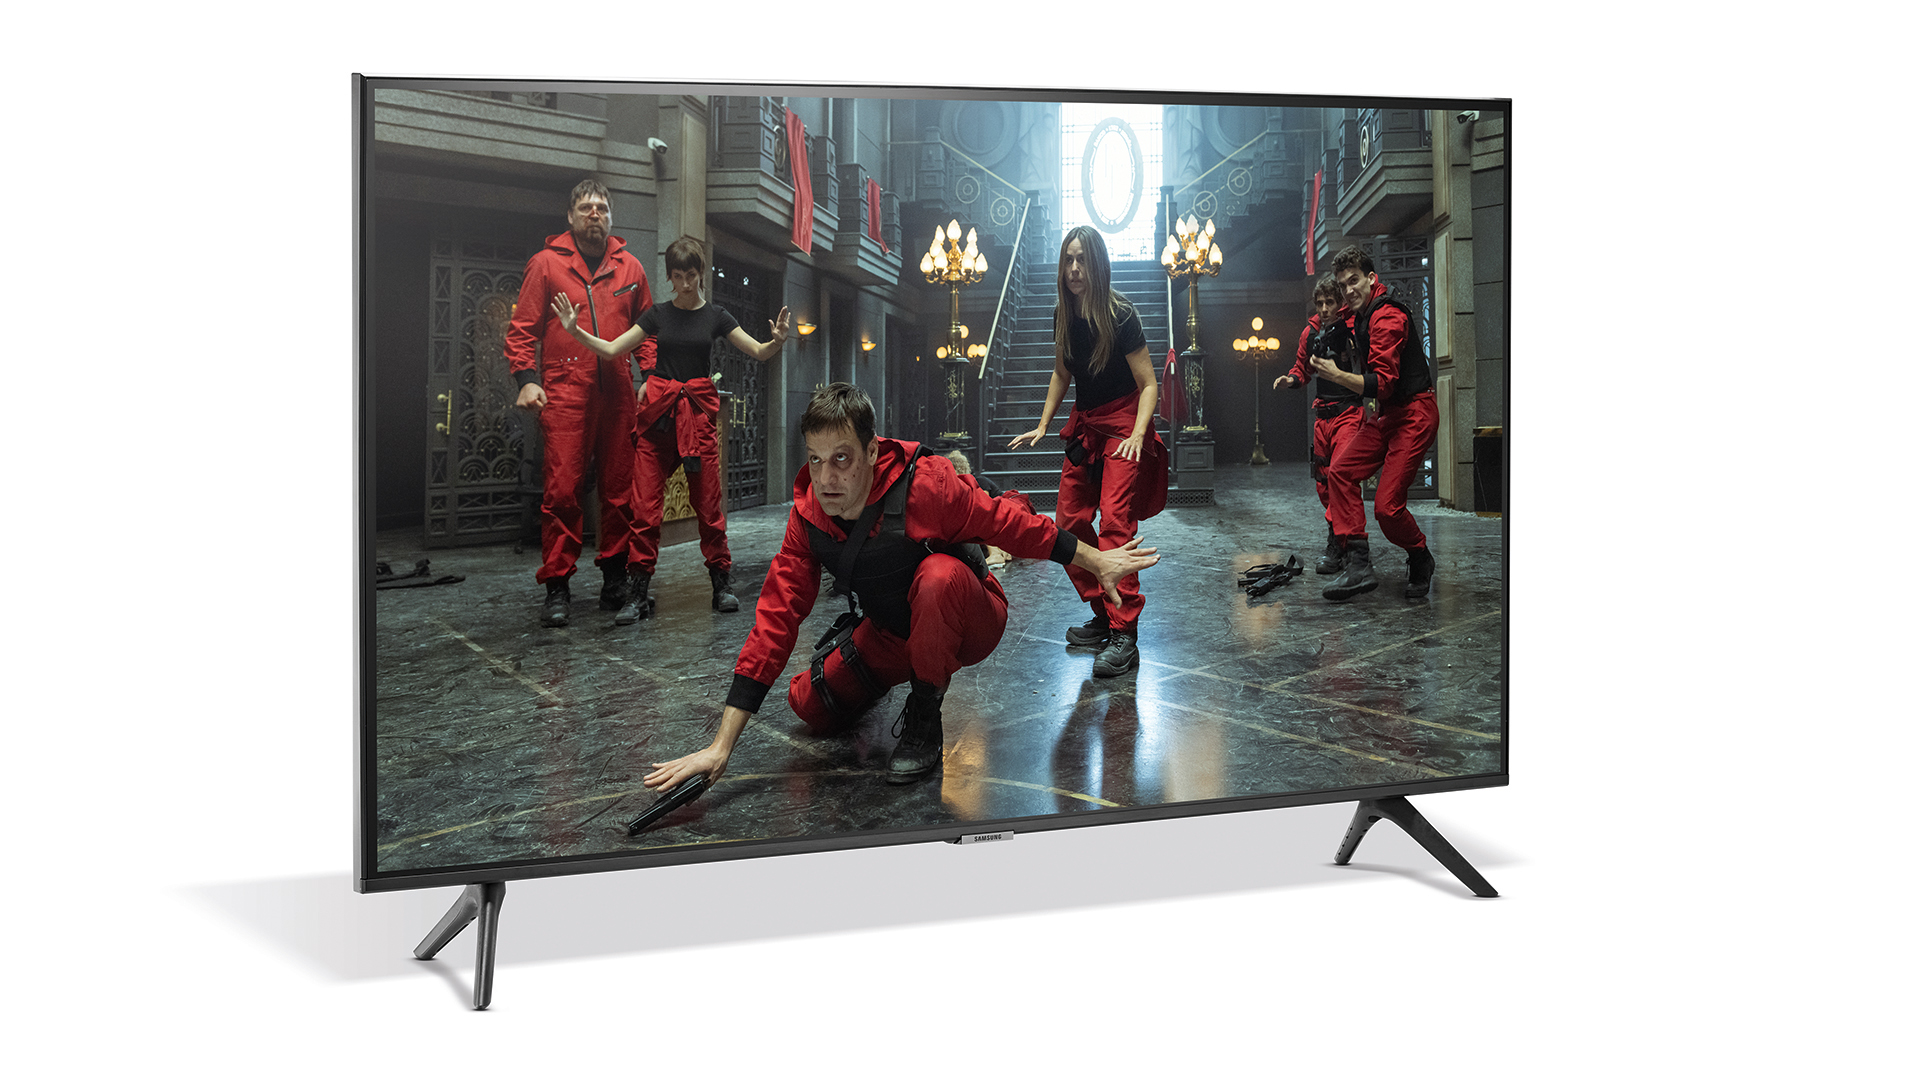 43-inch TV review: Samsung UE43AU7100